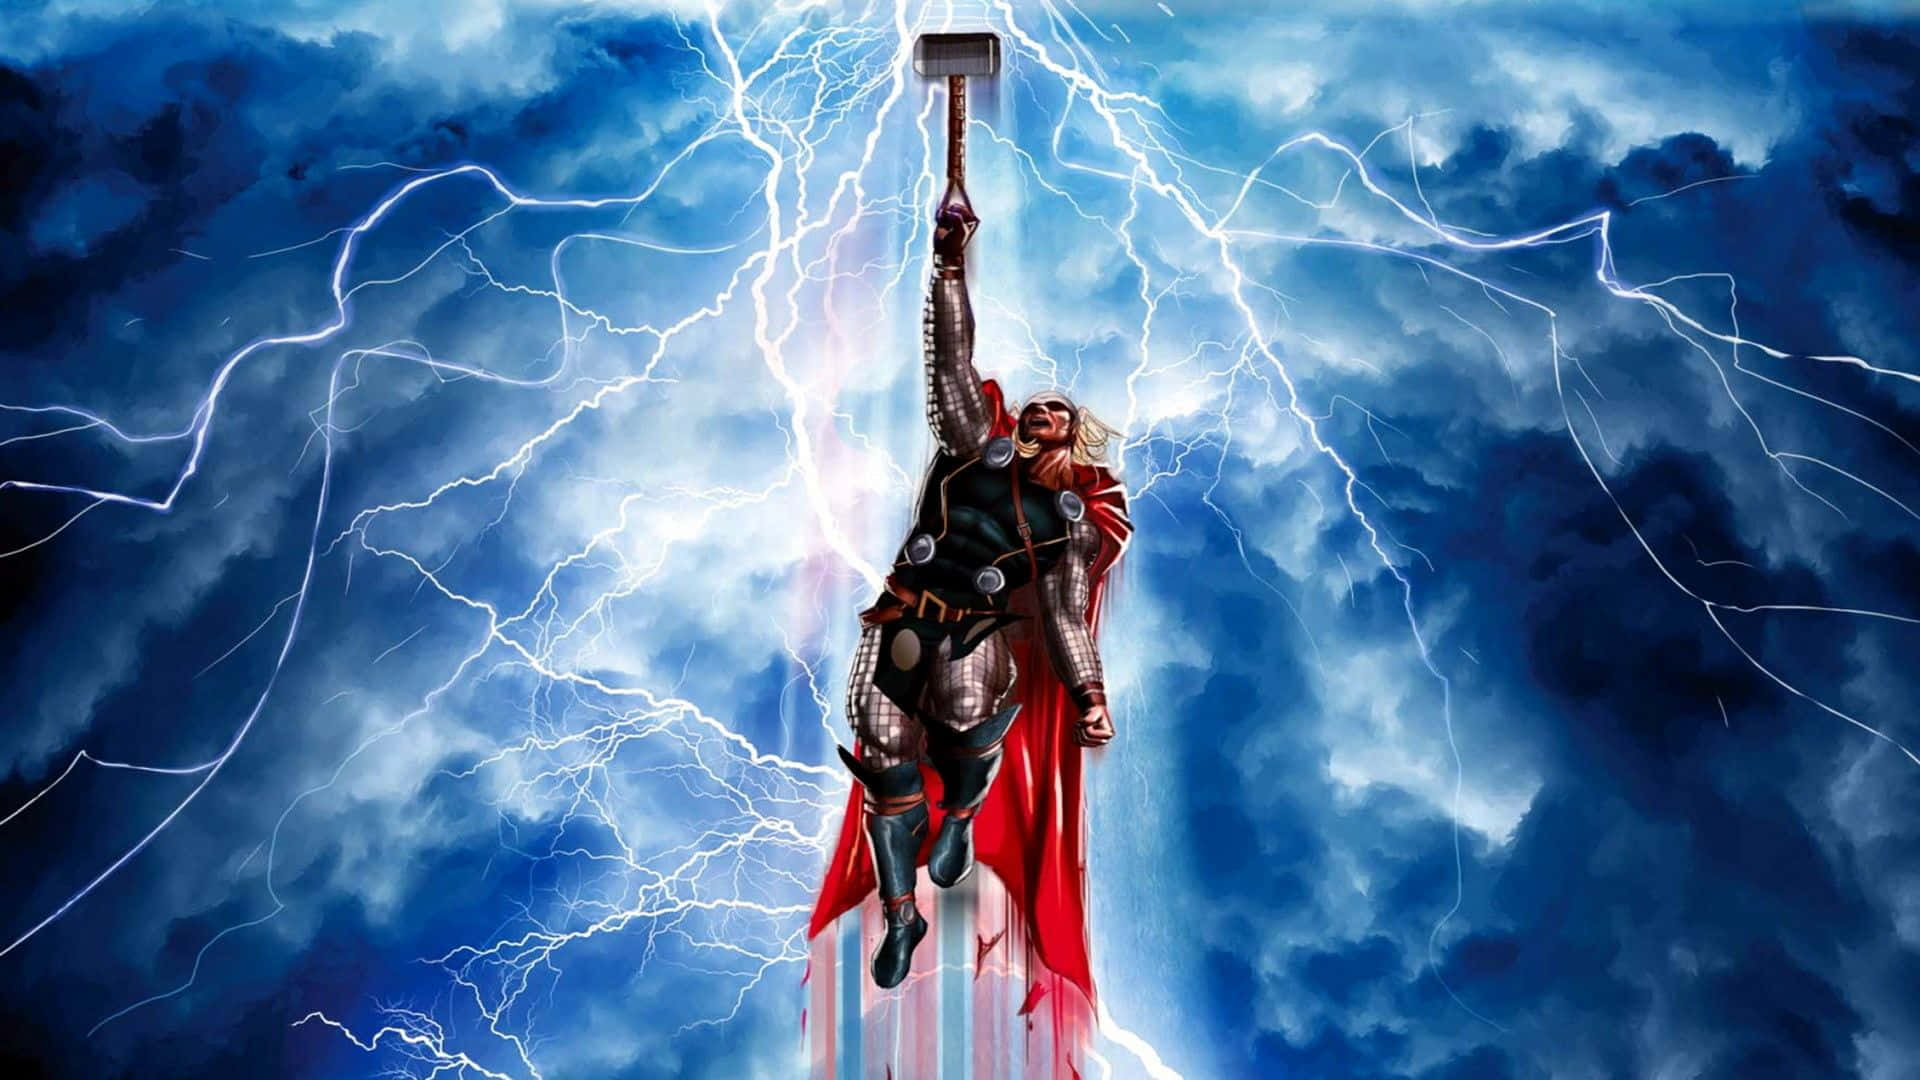 Lightning Strikes as God of Thunder Sword Slices through the Sky Wallpaper